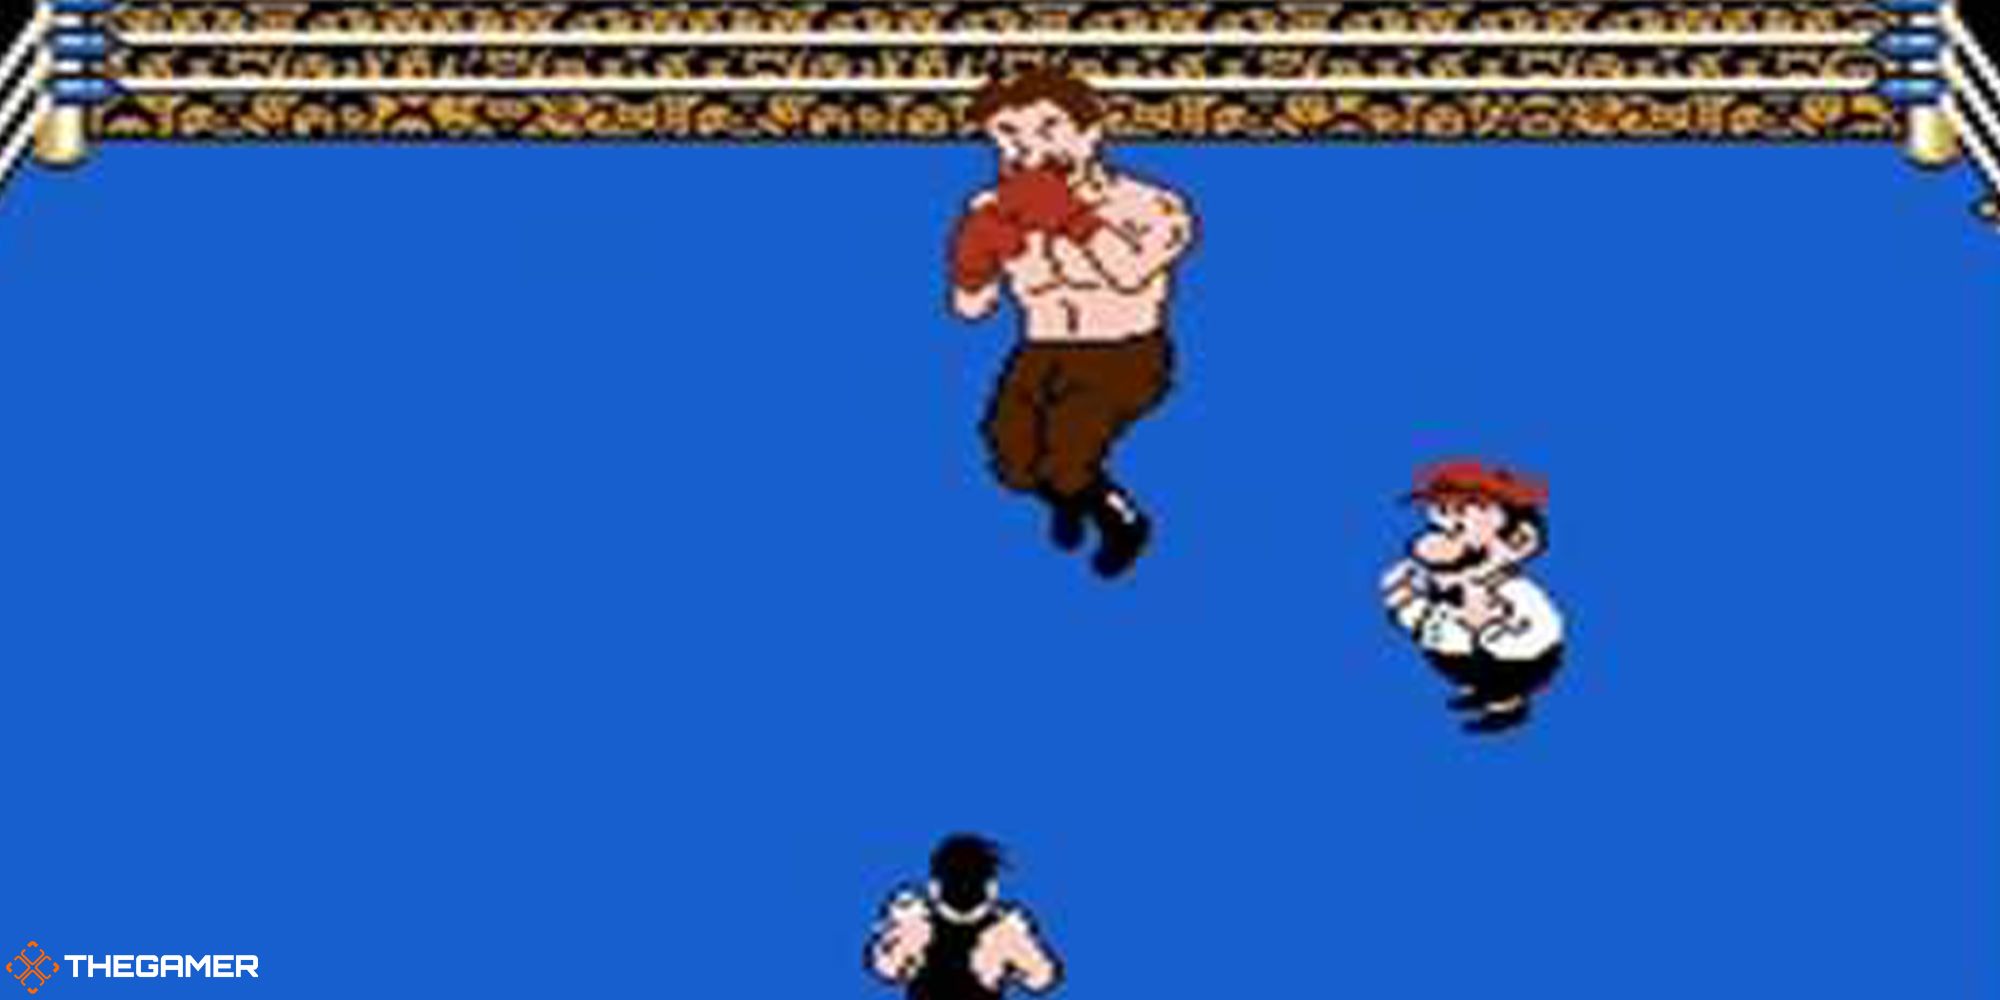 Nintendo's Punch-Out!! - Von Kaiser